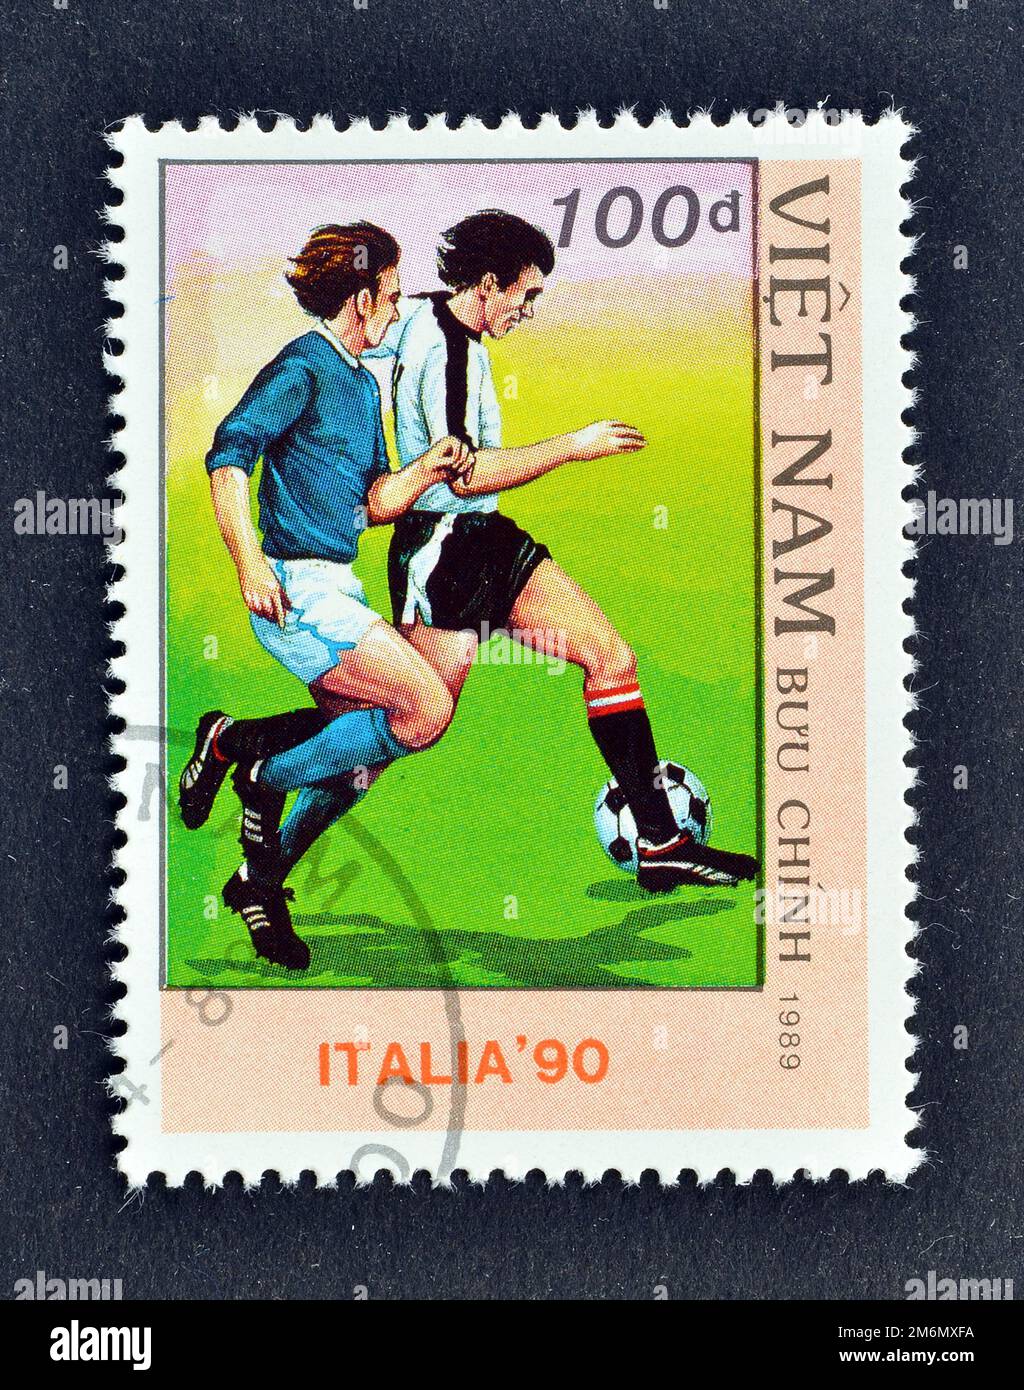 Stornierter Briefmarken, gedruckt von Vietnam, der die Fußball-Weltmeisterschaft 1990 zeigt, Italien, um 1989. Stockfoto